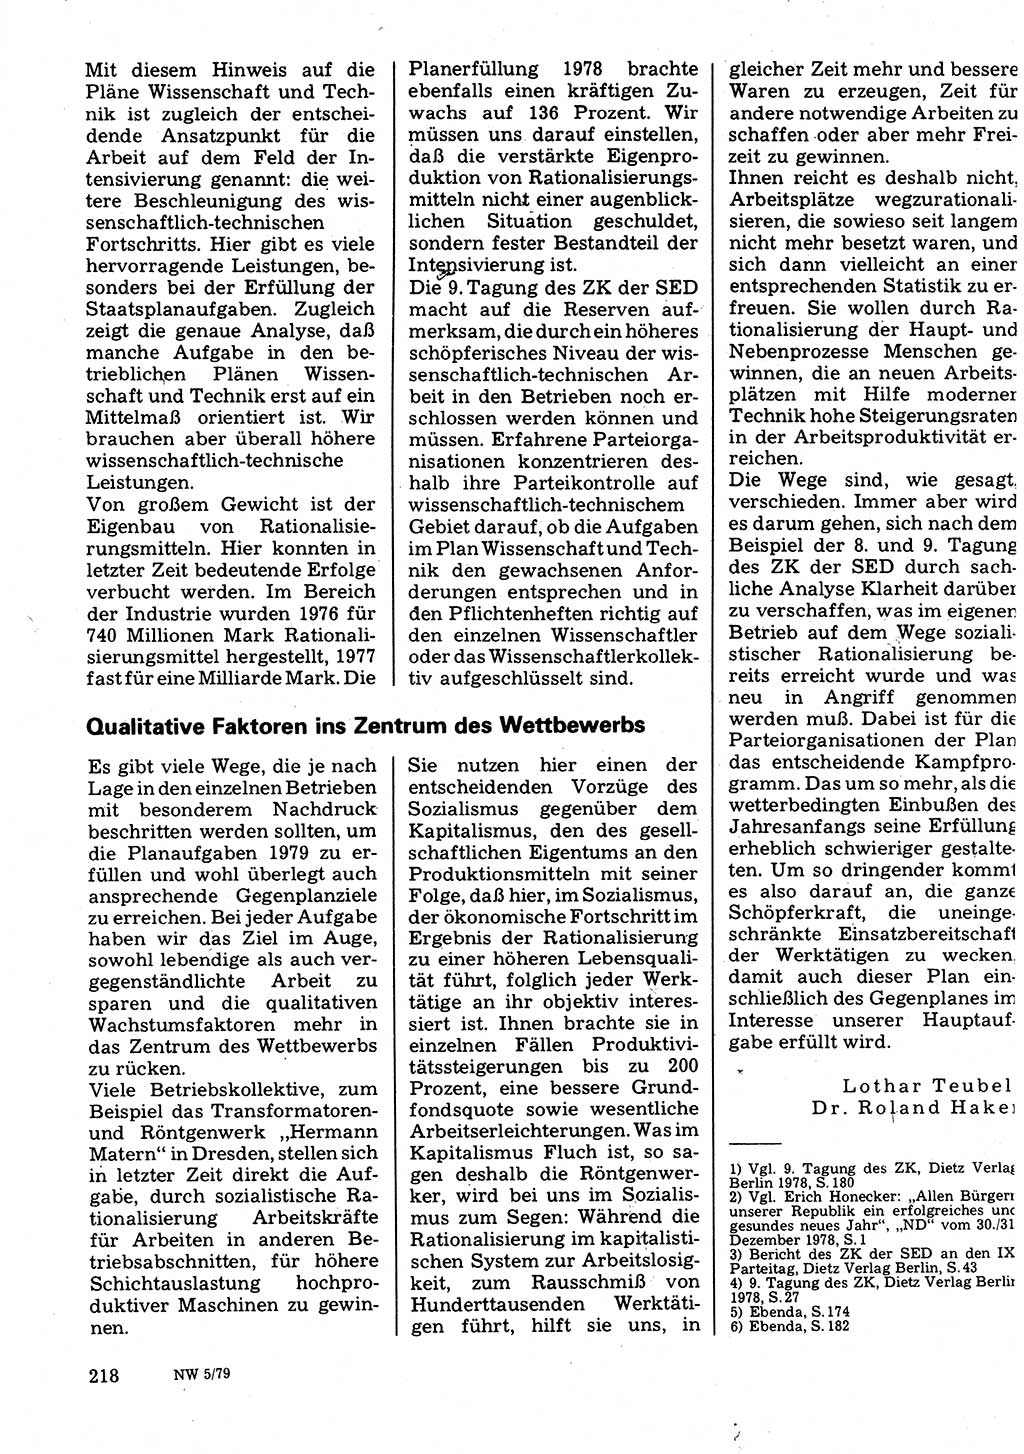 Neuer Weg (NW), Organ des Zentralkomitees (ZK) der SED (Sozialistische Einheitspartei Deutschlands) für Fragen des Parteilebens, 34. Jahrgang [Deutsche Demokratische Republik (DDR)] 1979, Seite 218 (NW ZK SED DDR 1979, S. 218)